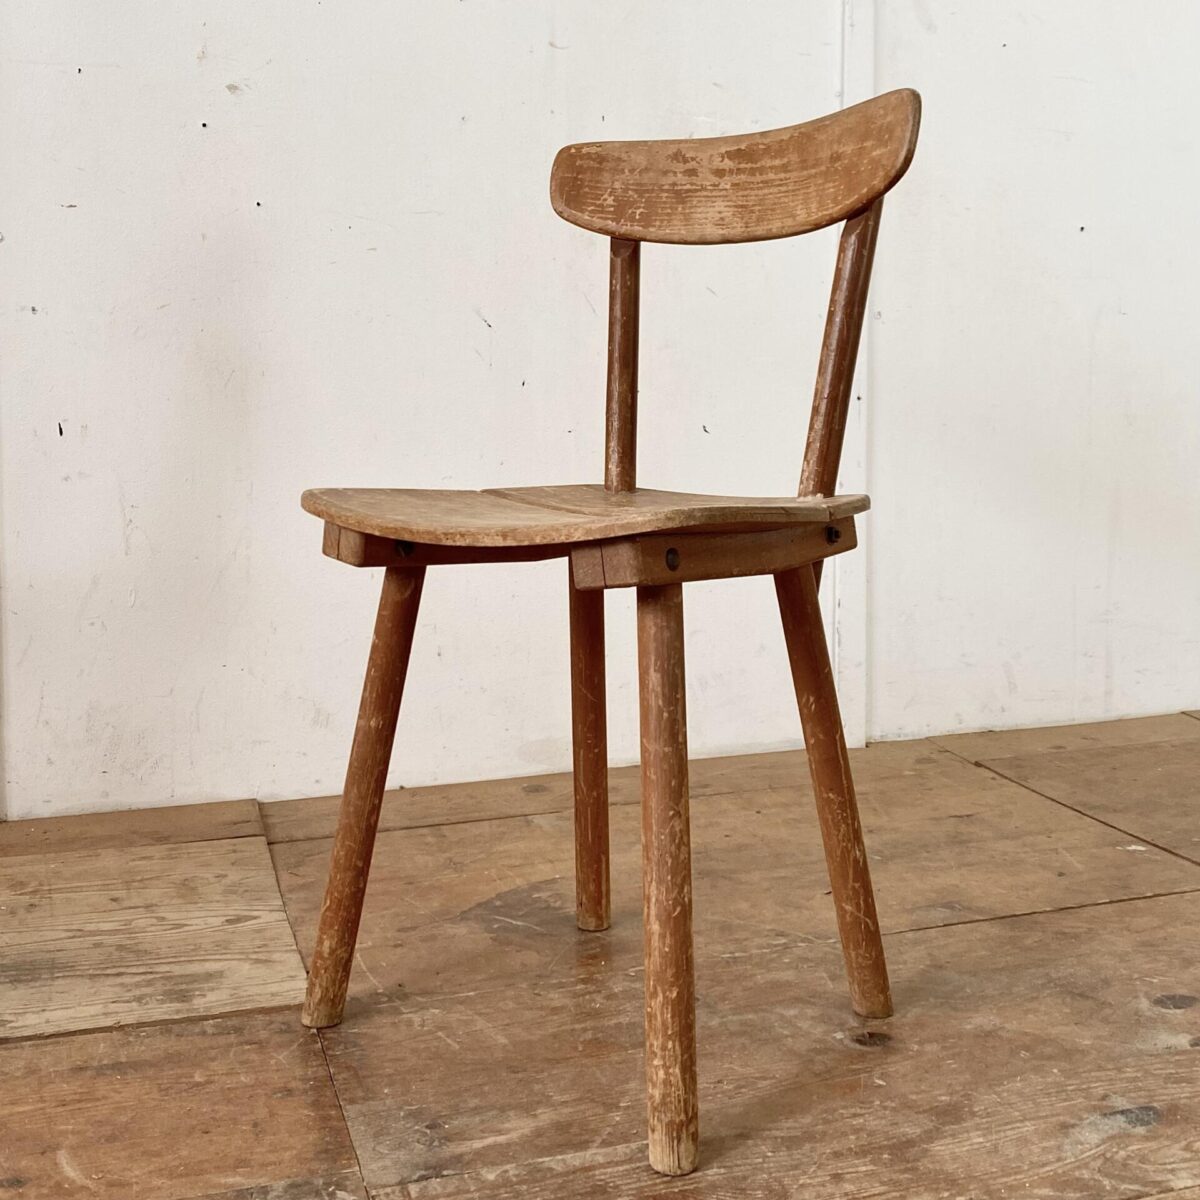 Deuxieme.shop swissdesign Jacob Müller Stuhl aus den 50er Jahren, für Wohnhilfe Zürich. Der Stuhl kann komplett auseinander genommen werden, Lehne und Stuhlbeine werden in die Leisten unter der Sitzfläche gesteckt, und mit Schlossschrauben geklemmt. Der Stuhl ist in verbrauchtem jedoch stabilen Zustand. 